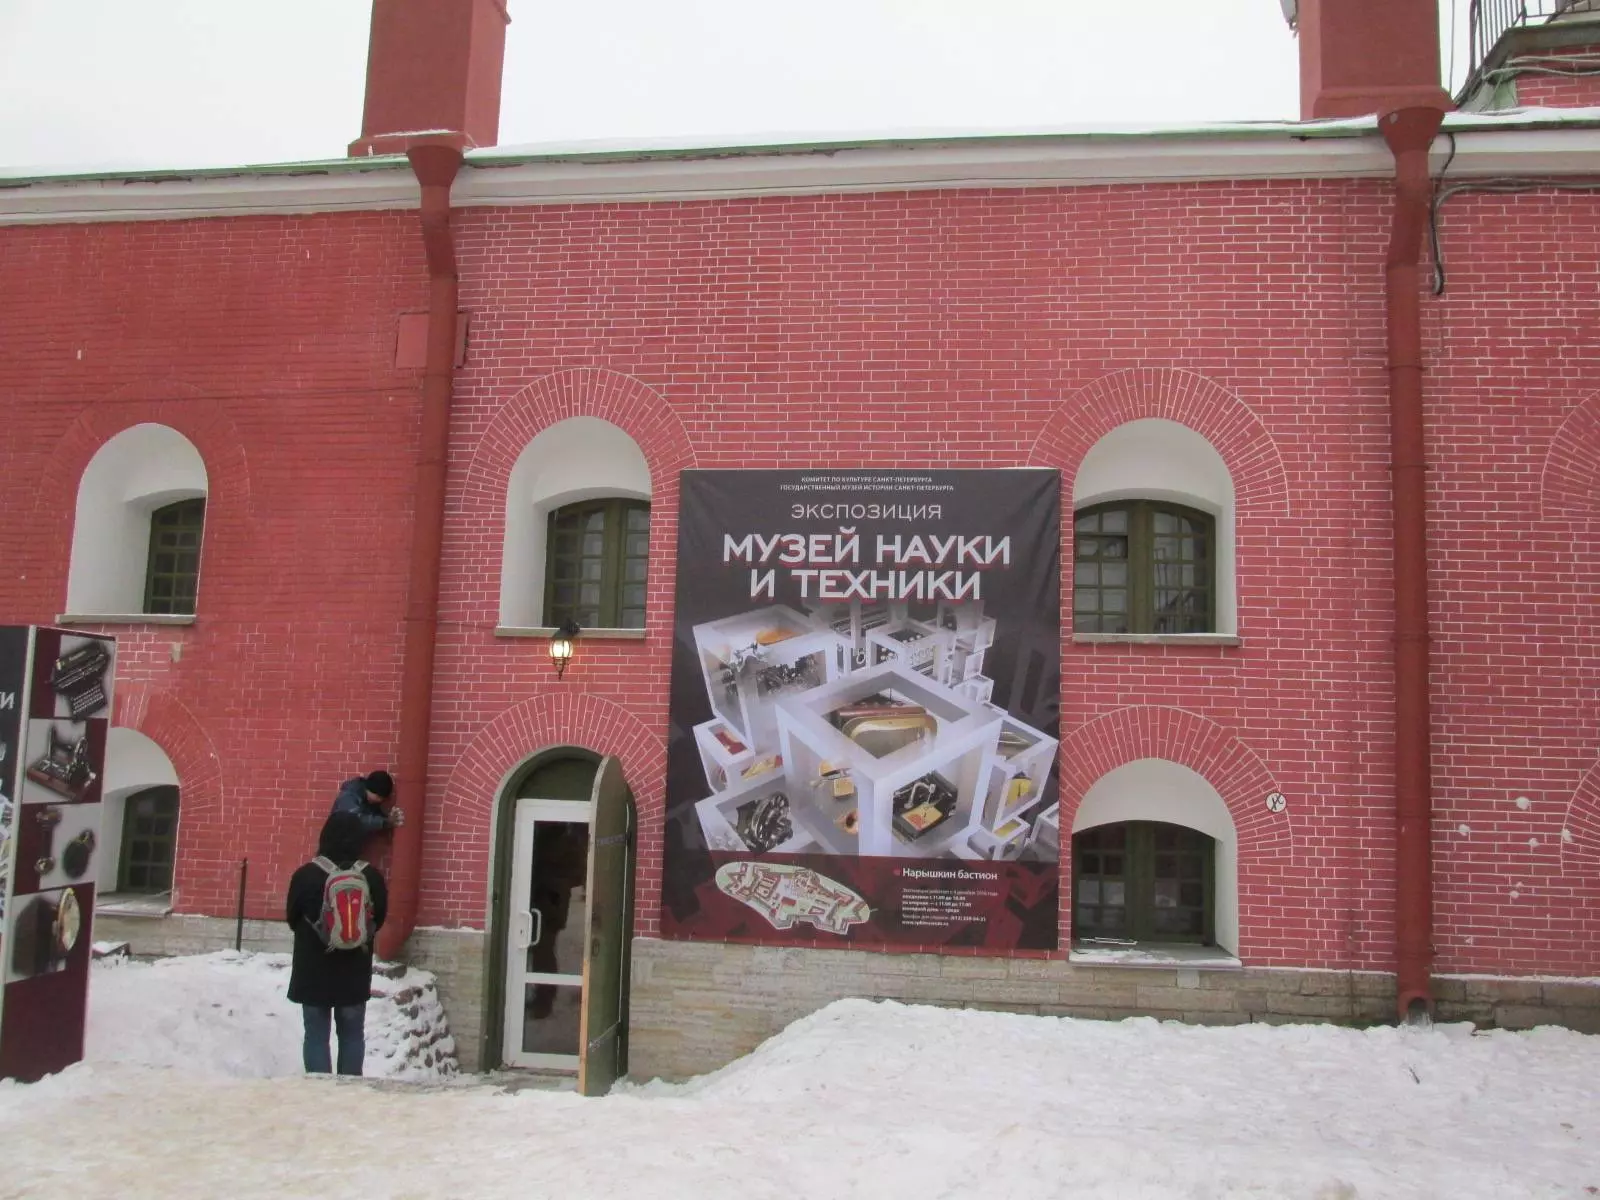 Музей науки и техники, санкт-петербург, петропавловская крепость